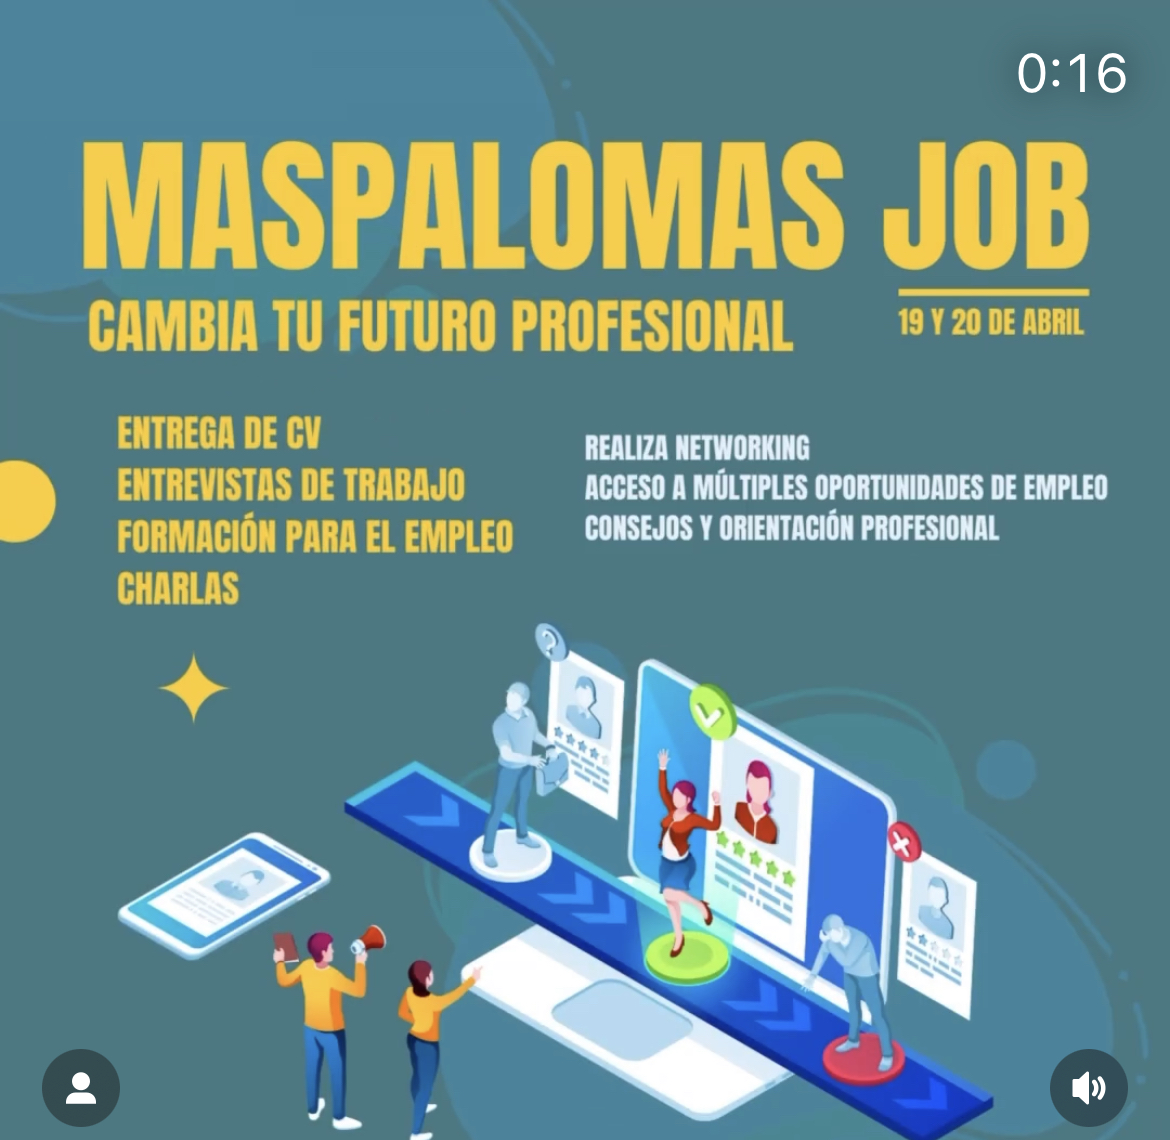 Maspalomas Job - Futuro Profesional